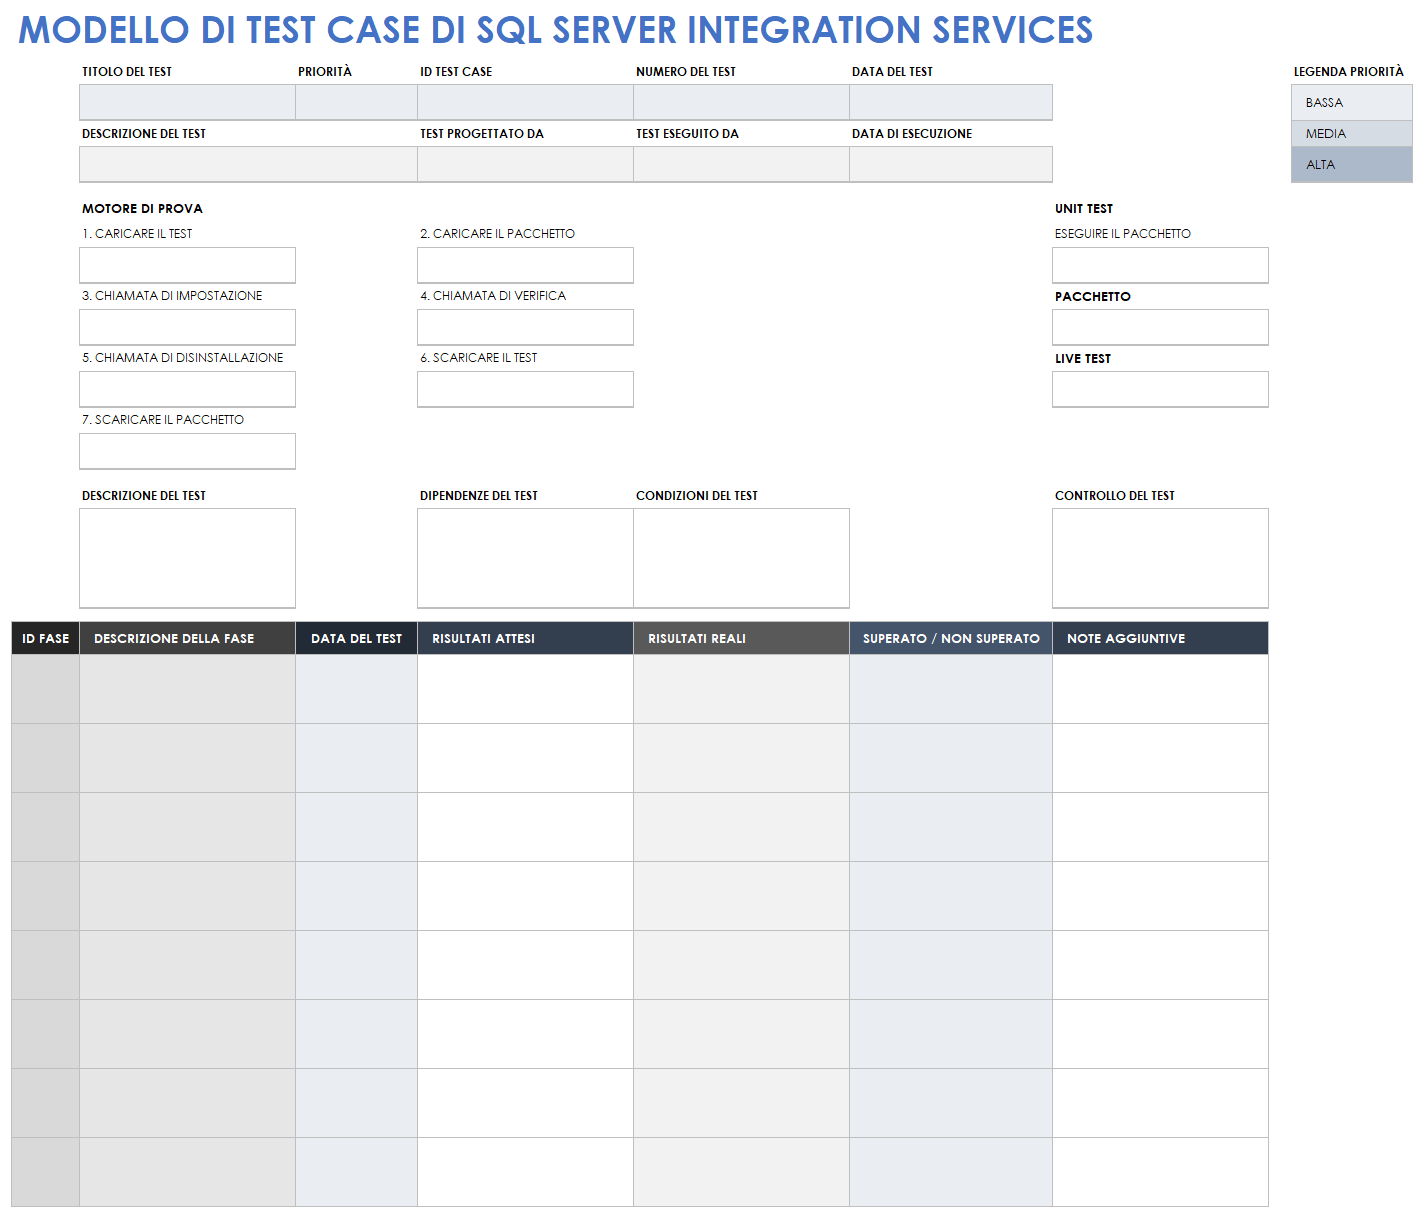 Modello di test case di test dei servizi di integrazione di SQL Server